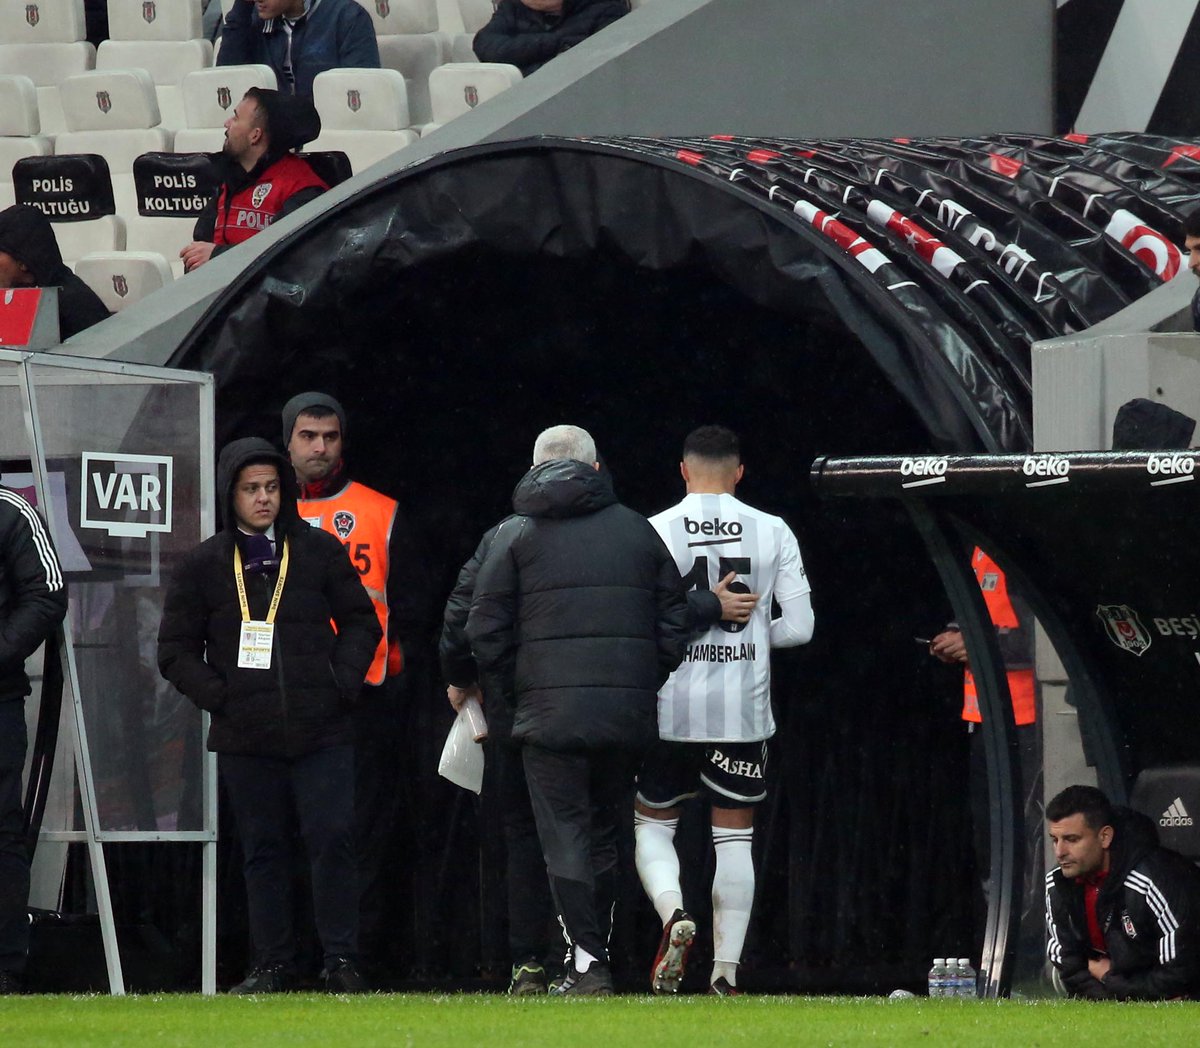 Beşiktaş, Alex Oxlade-Chamberlain'in uyluk arka adalesinde tam kat yırtık tespit edildiğini açıkladı.